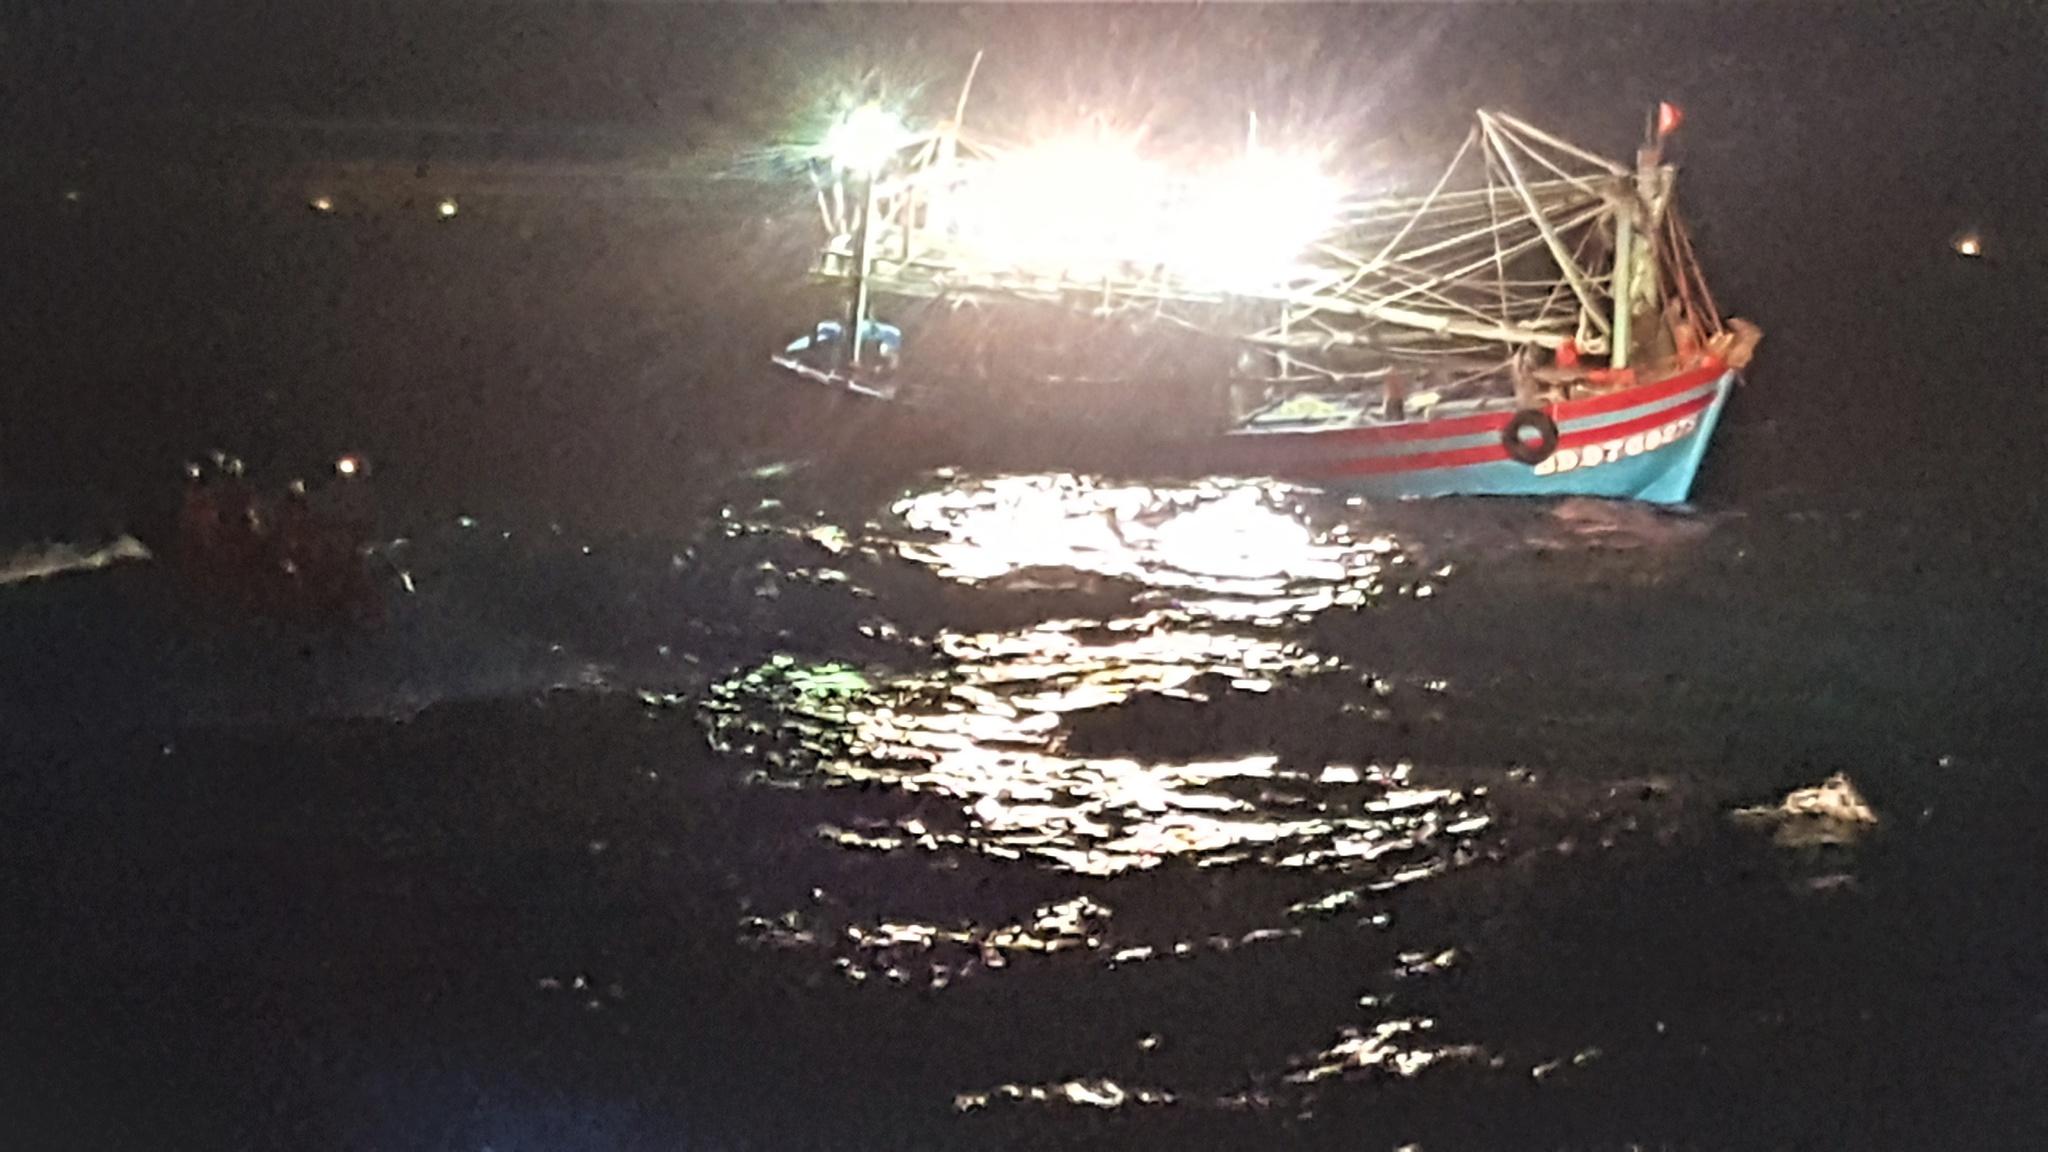 Cứu nạn 7 ngư dân tỉnh Bình Định trôi dạt trong biển động, tàu bị phá nước - ảnh 3